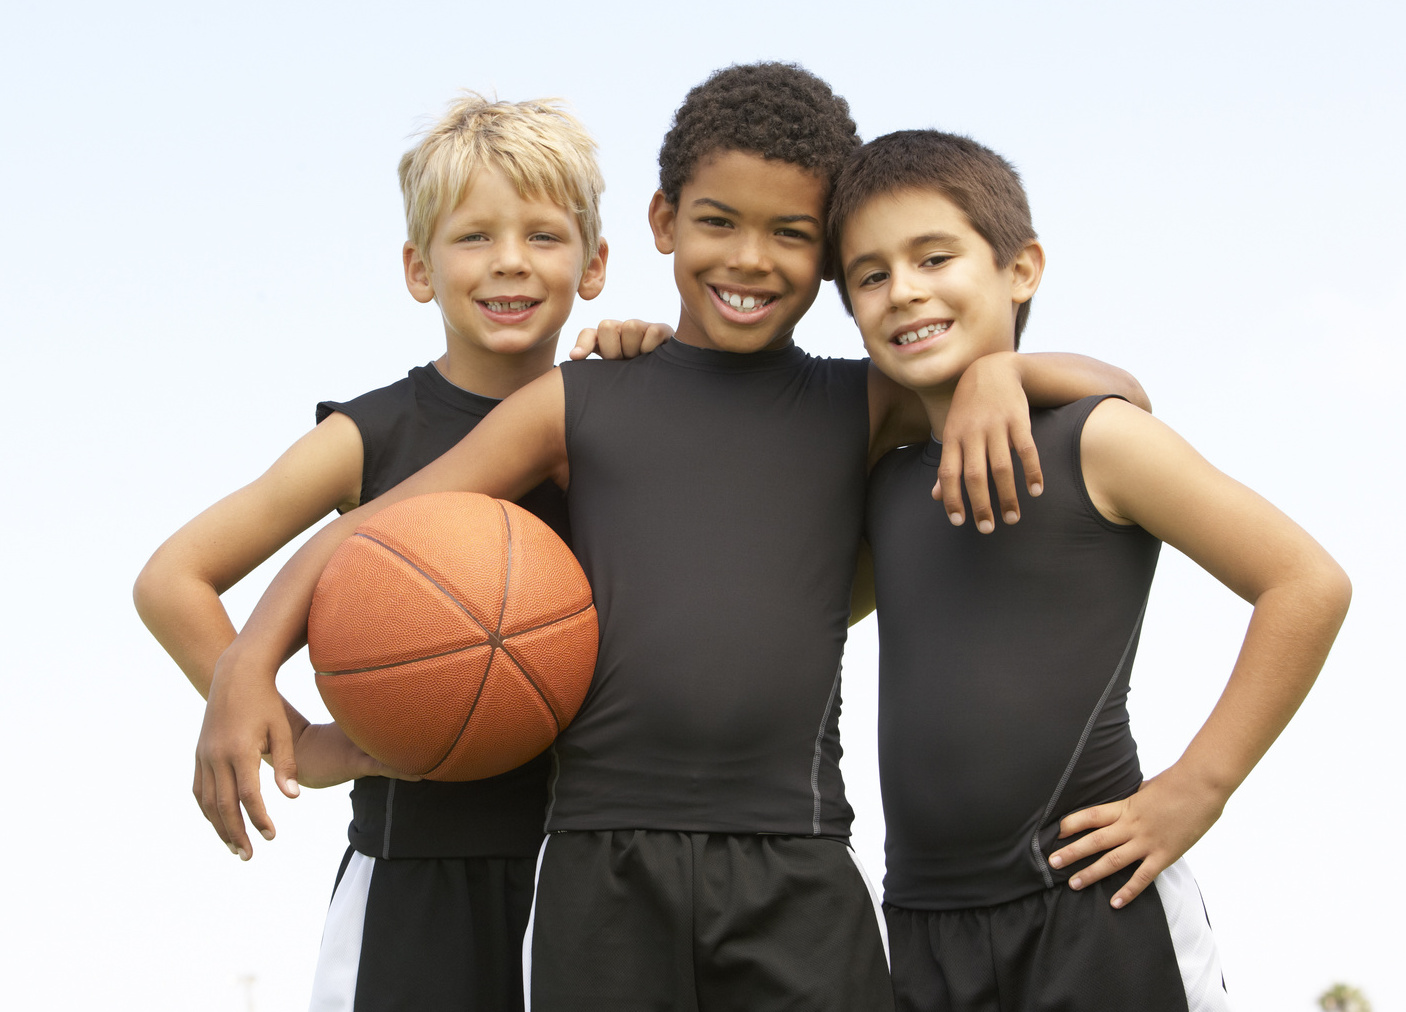 Les gestes de basket à apprendre à un jeune qui débute